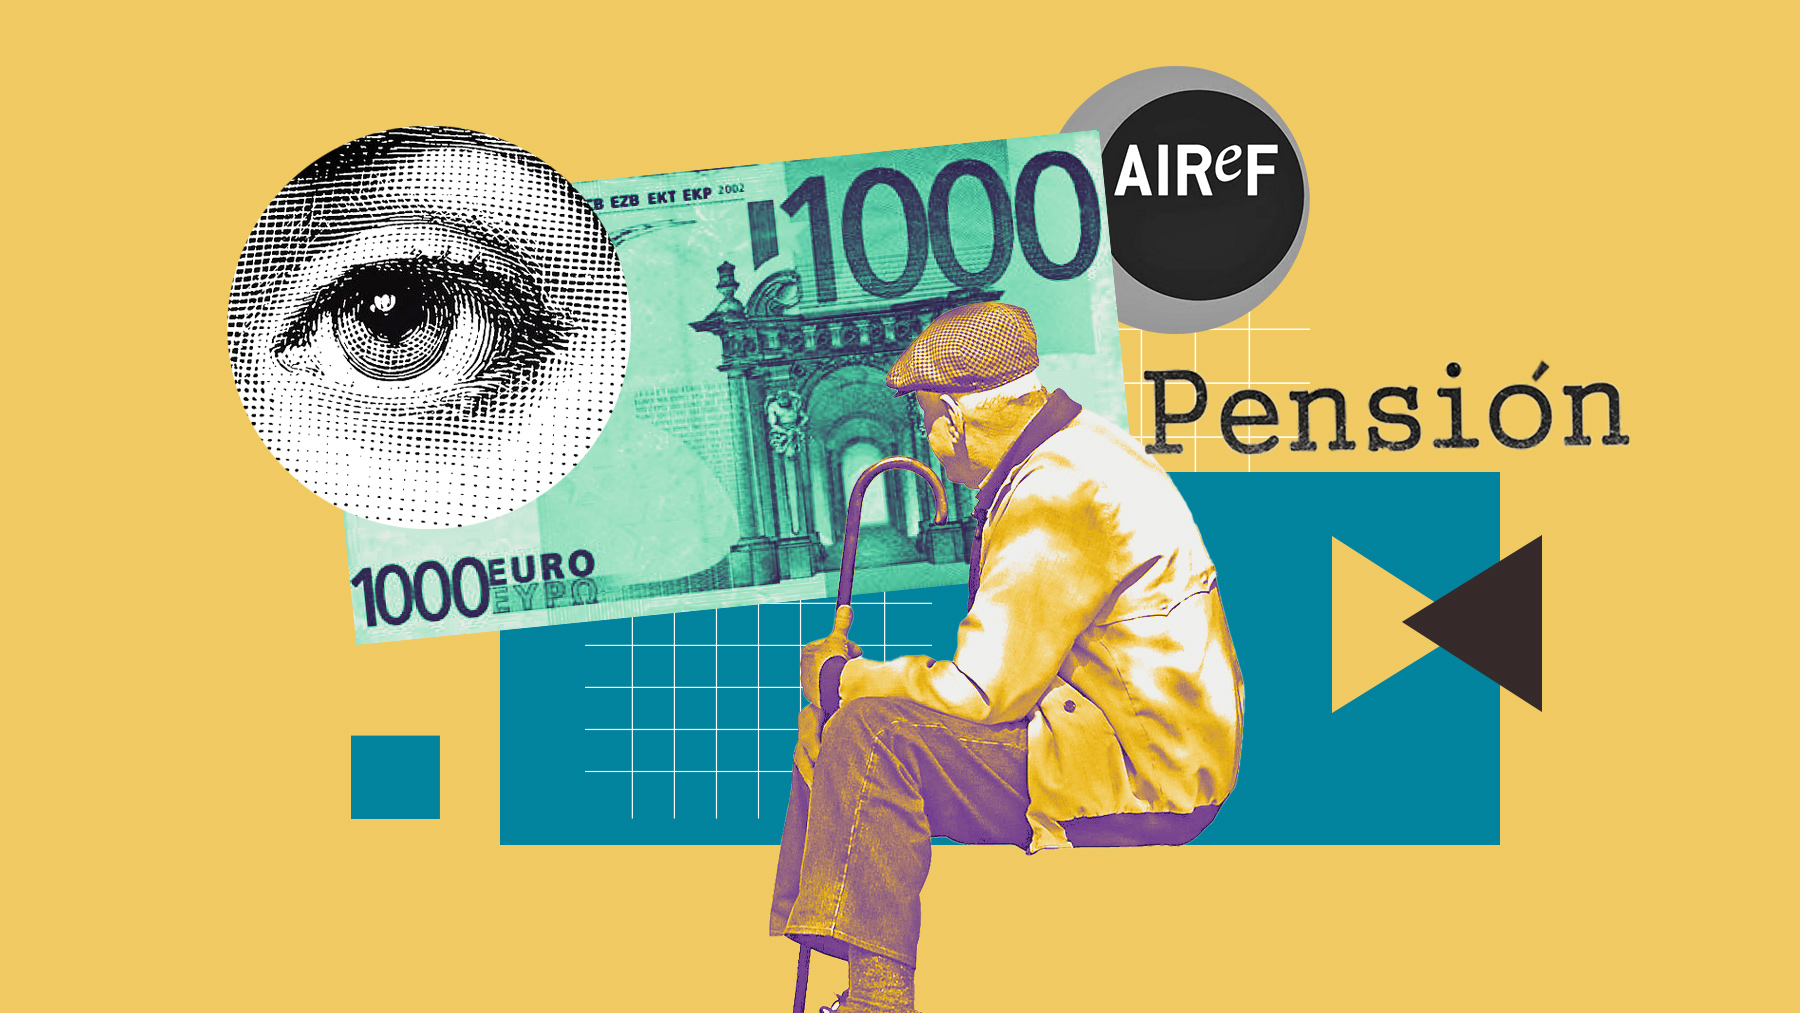 La-AIReF-prepara-un-duro-informe-contra-la-reforma-de-las-pensiones-y-el-riesgo-para-el-déficit-público-interior